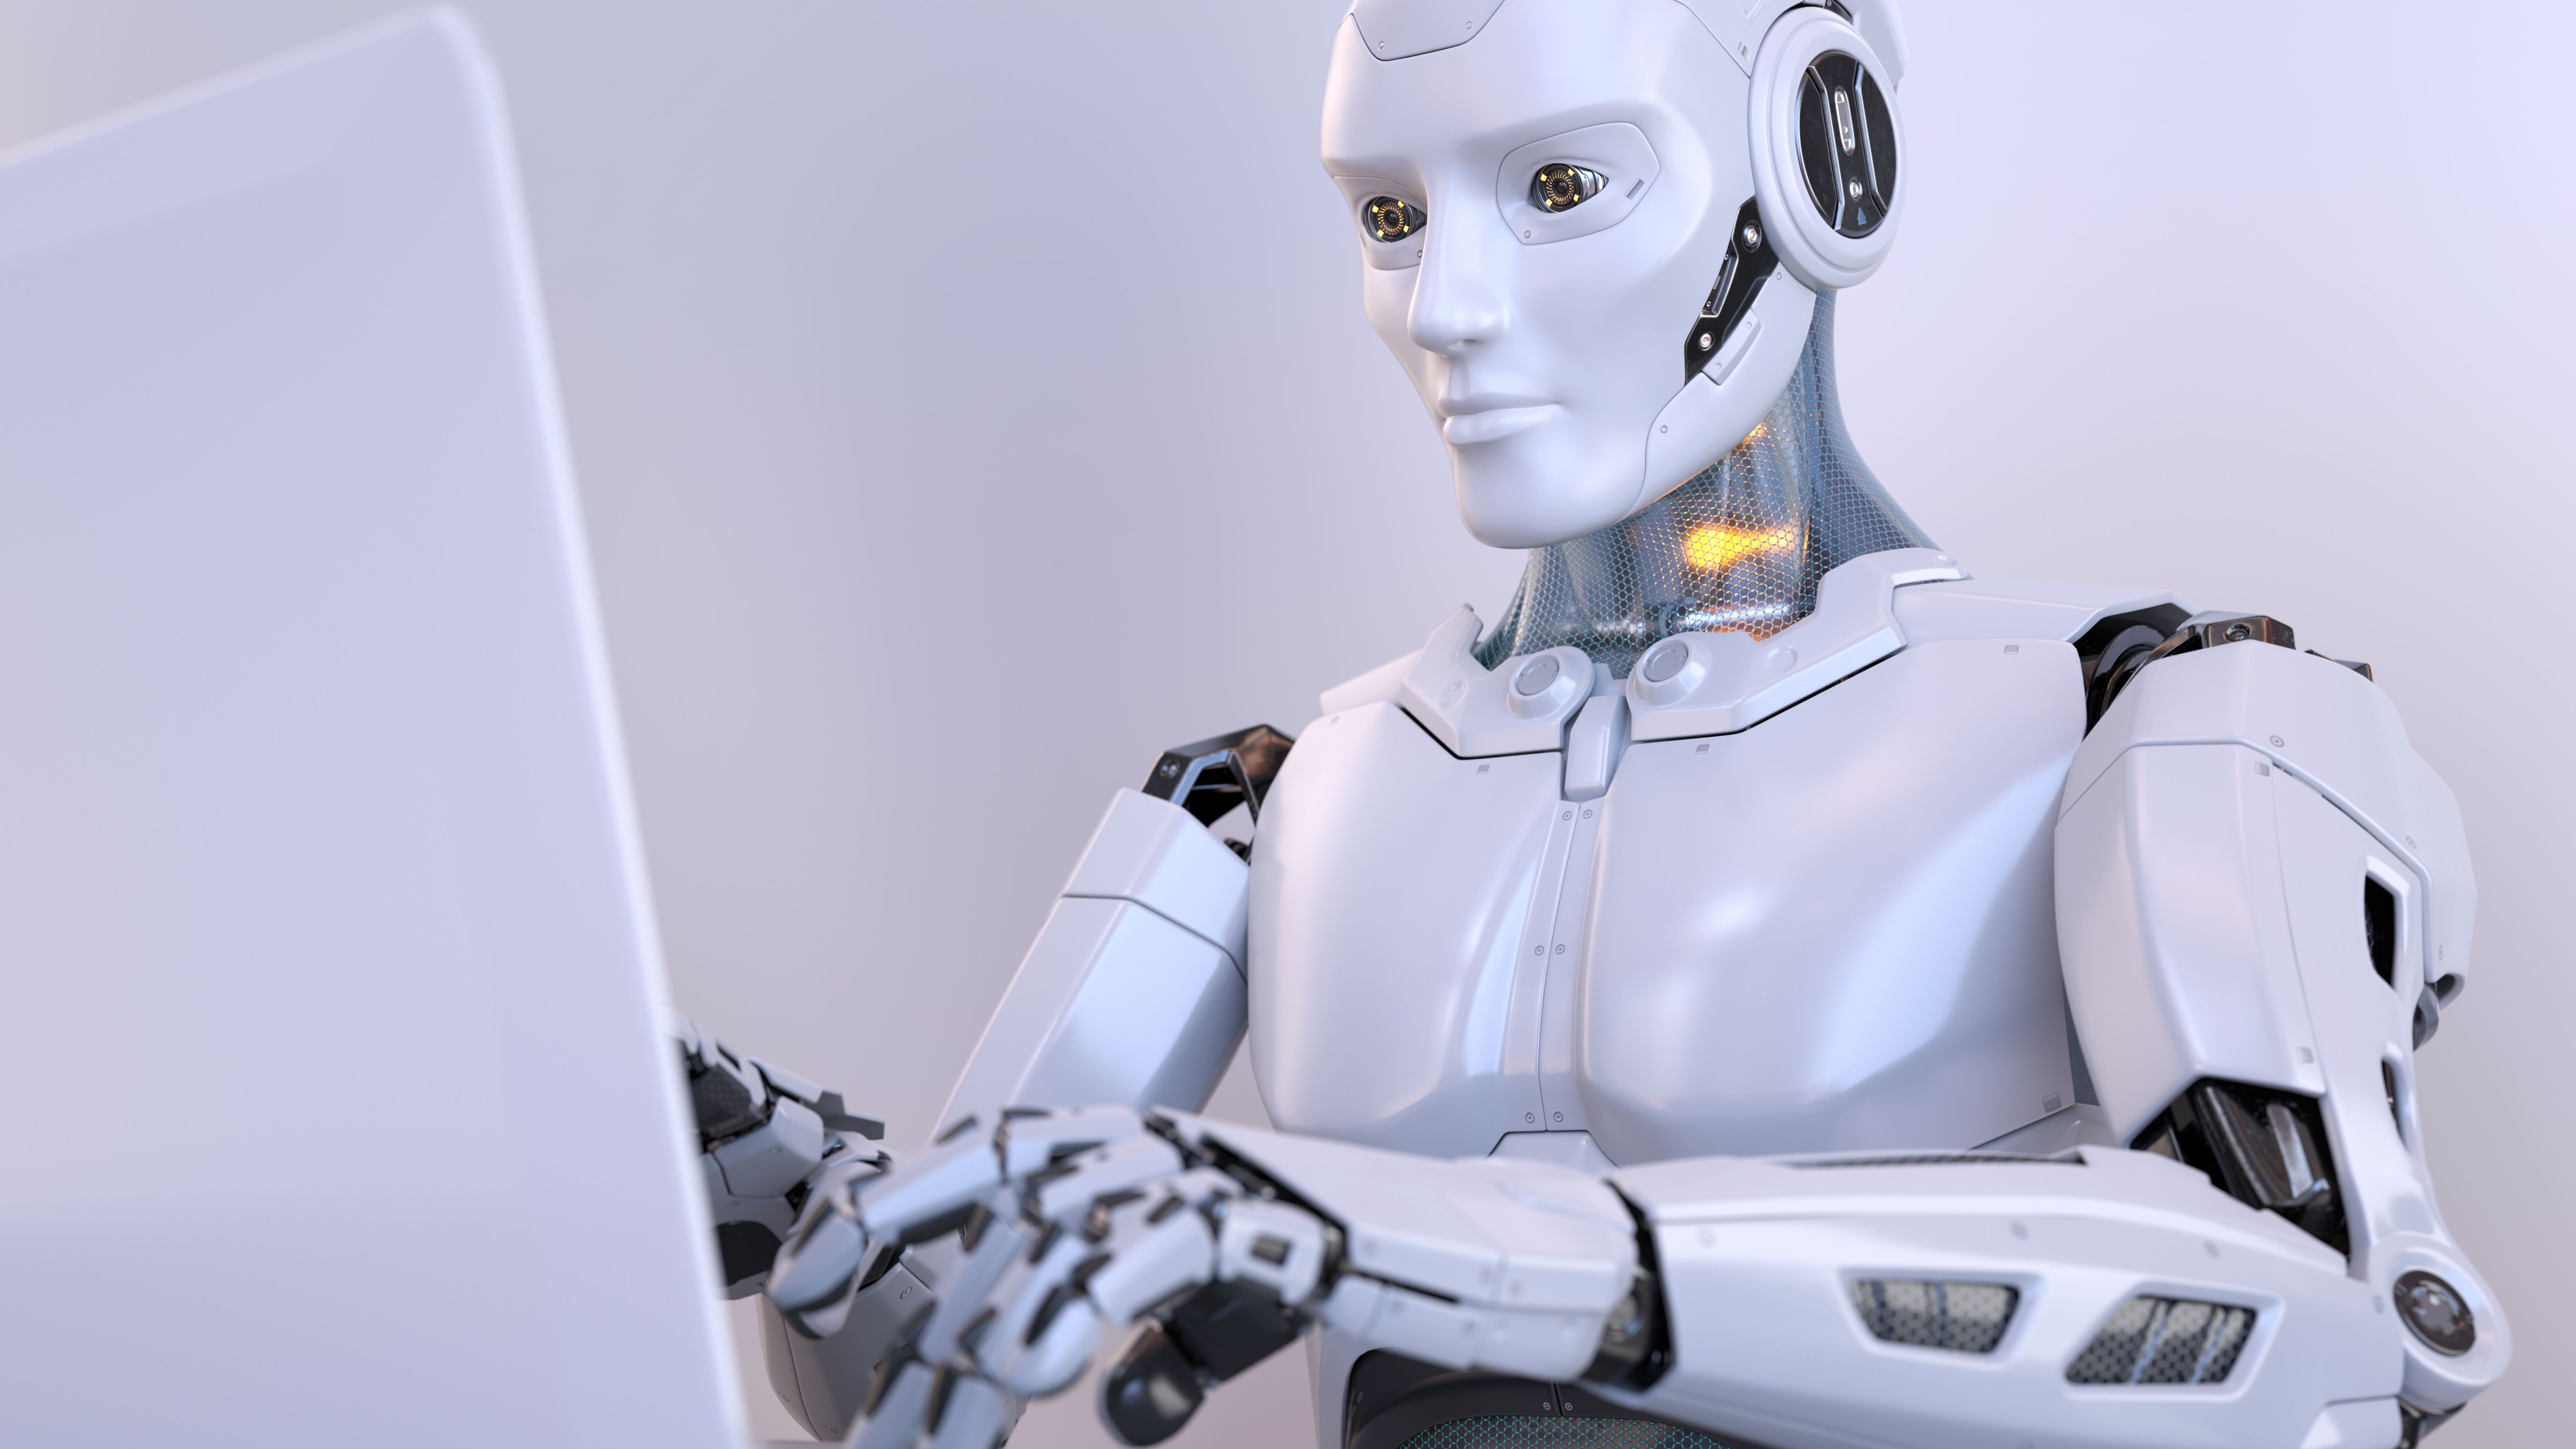 Чат бот с людьми. Робот. Современные роботы. Робот с искусственным интеллектом. Умный робот.